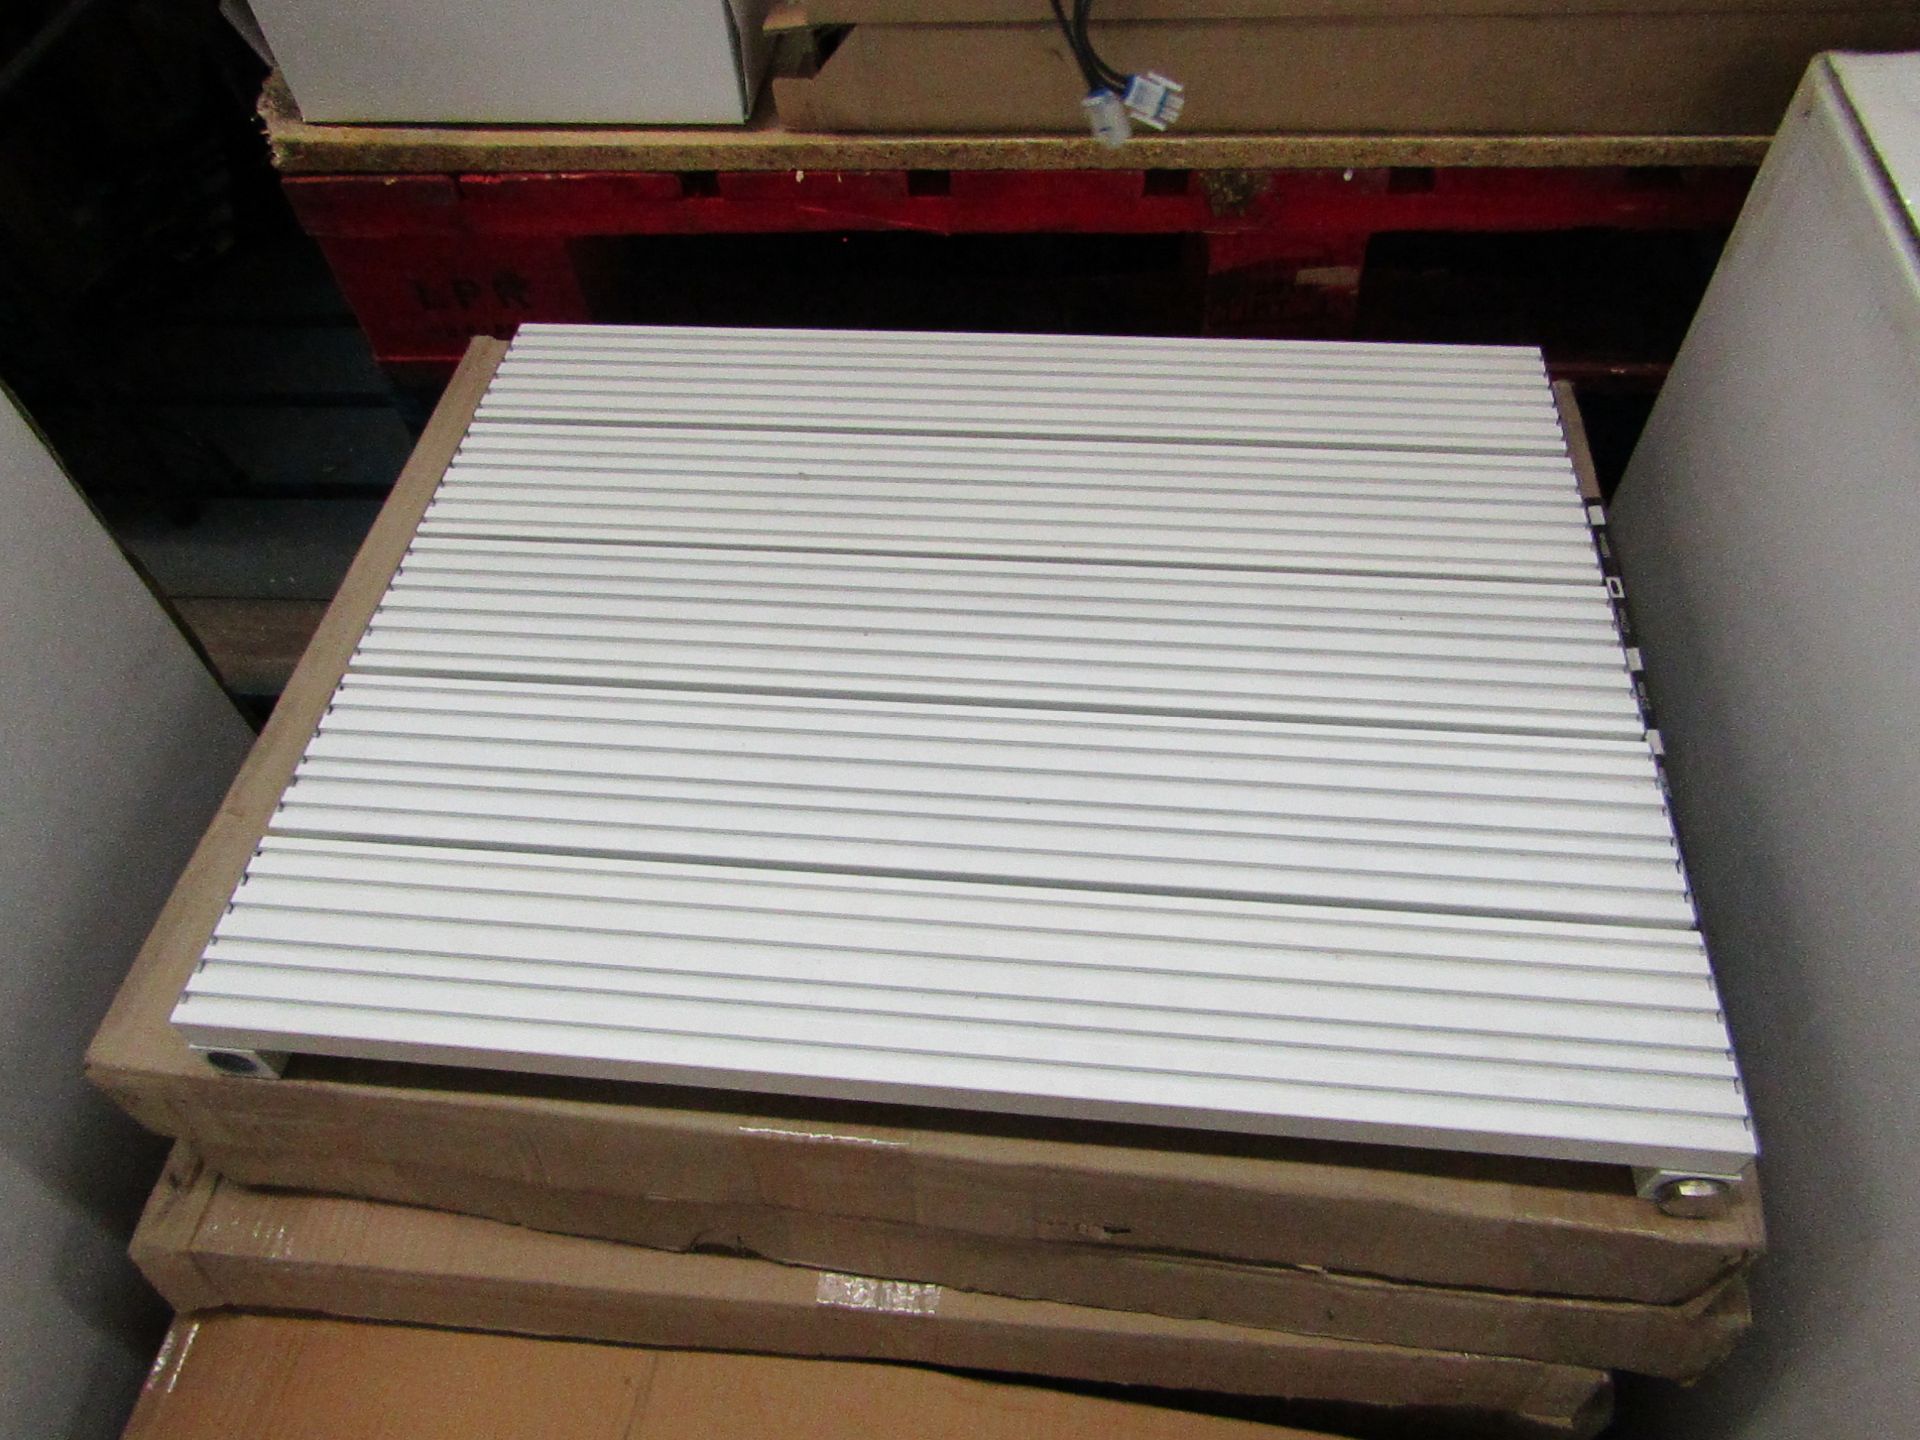 REINA ENZO - Aluminium wall Radiator, White - 470x600mm